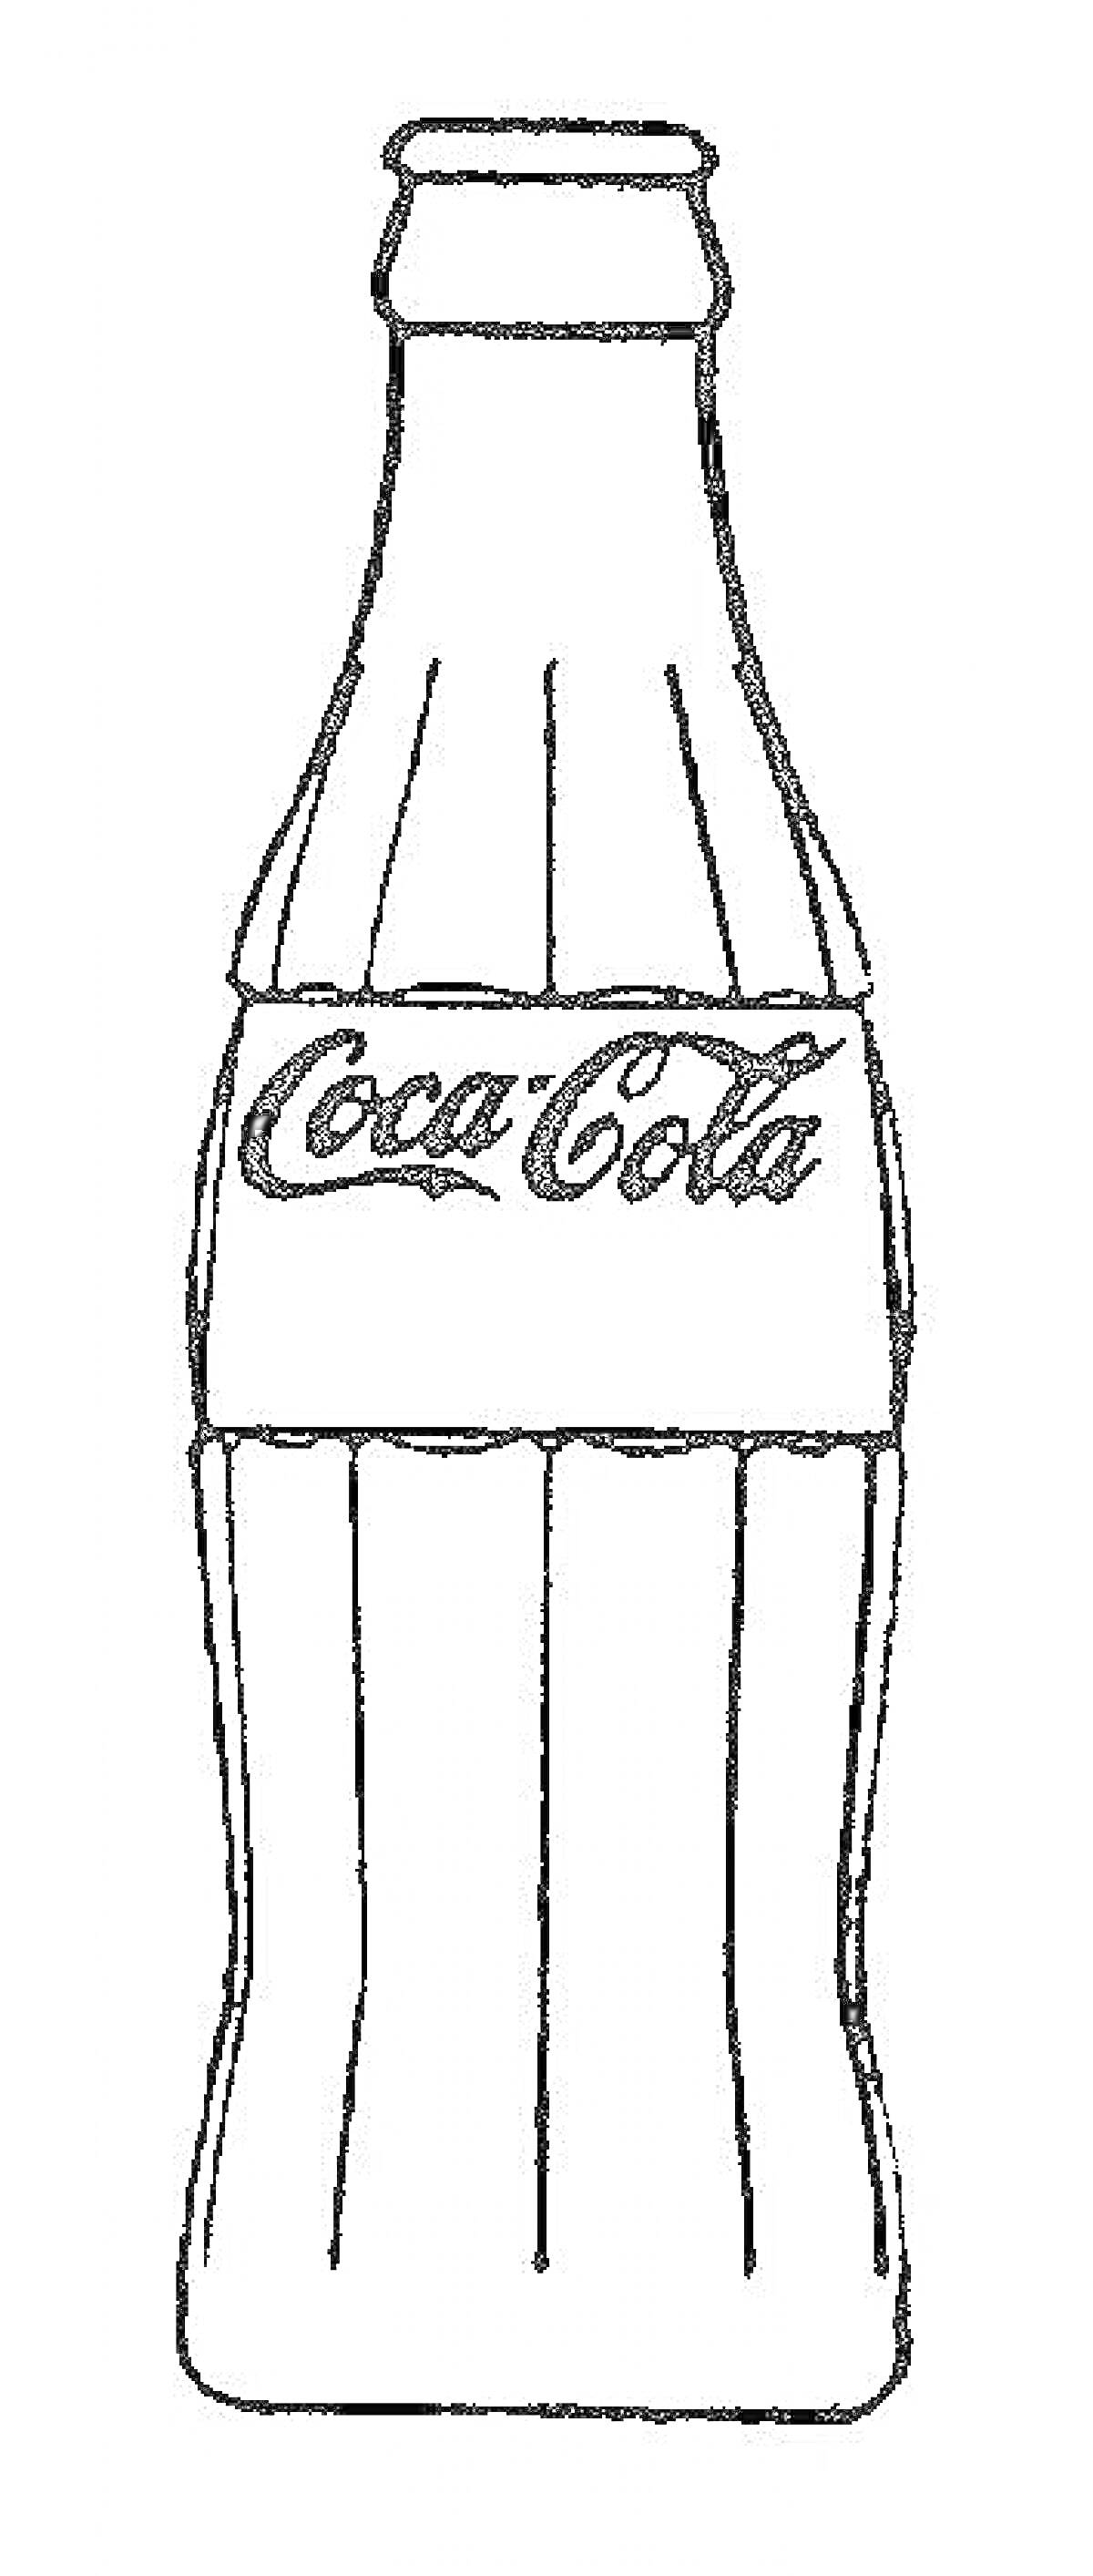 Бутылка Coca-Cola для раскрашивания